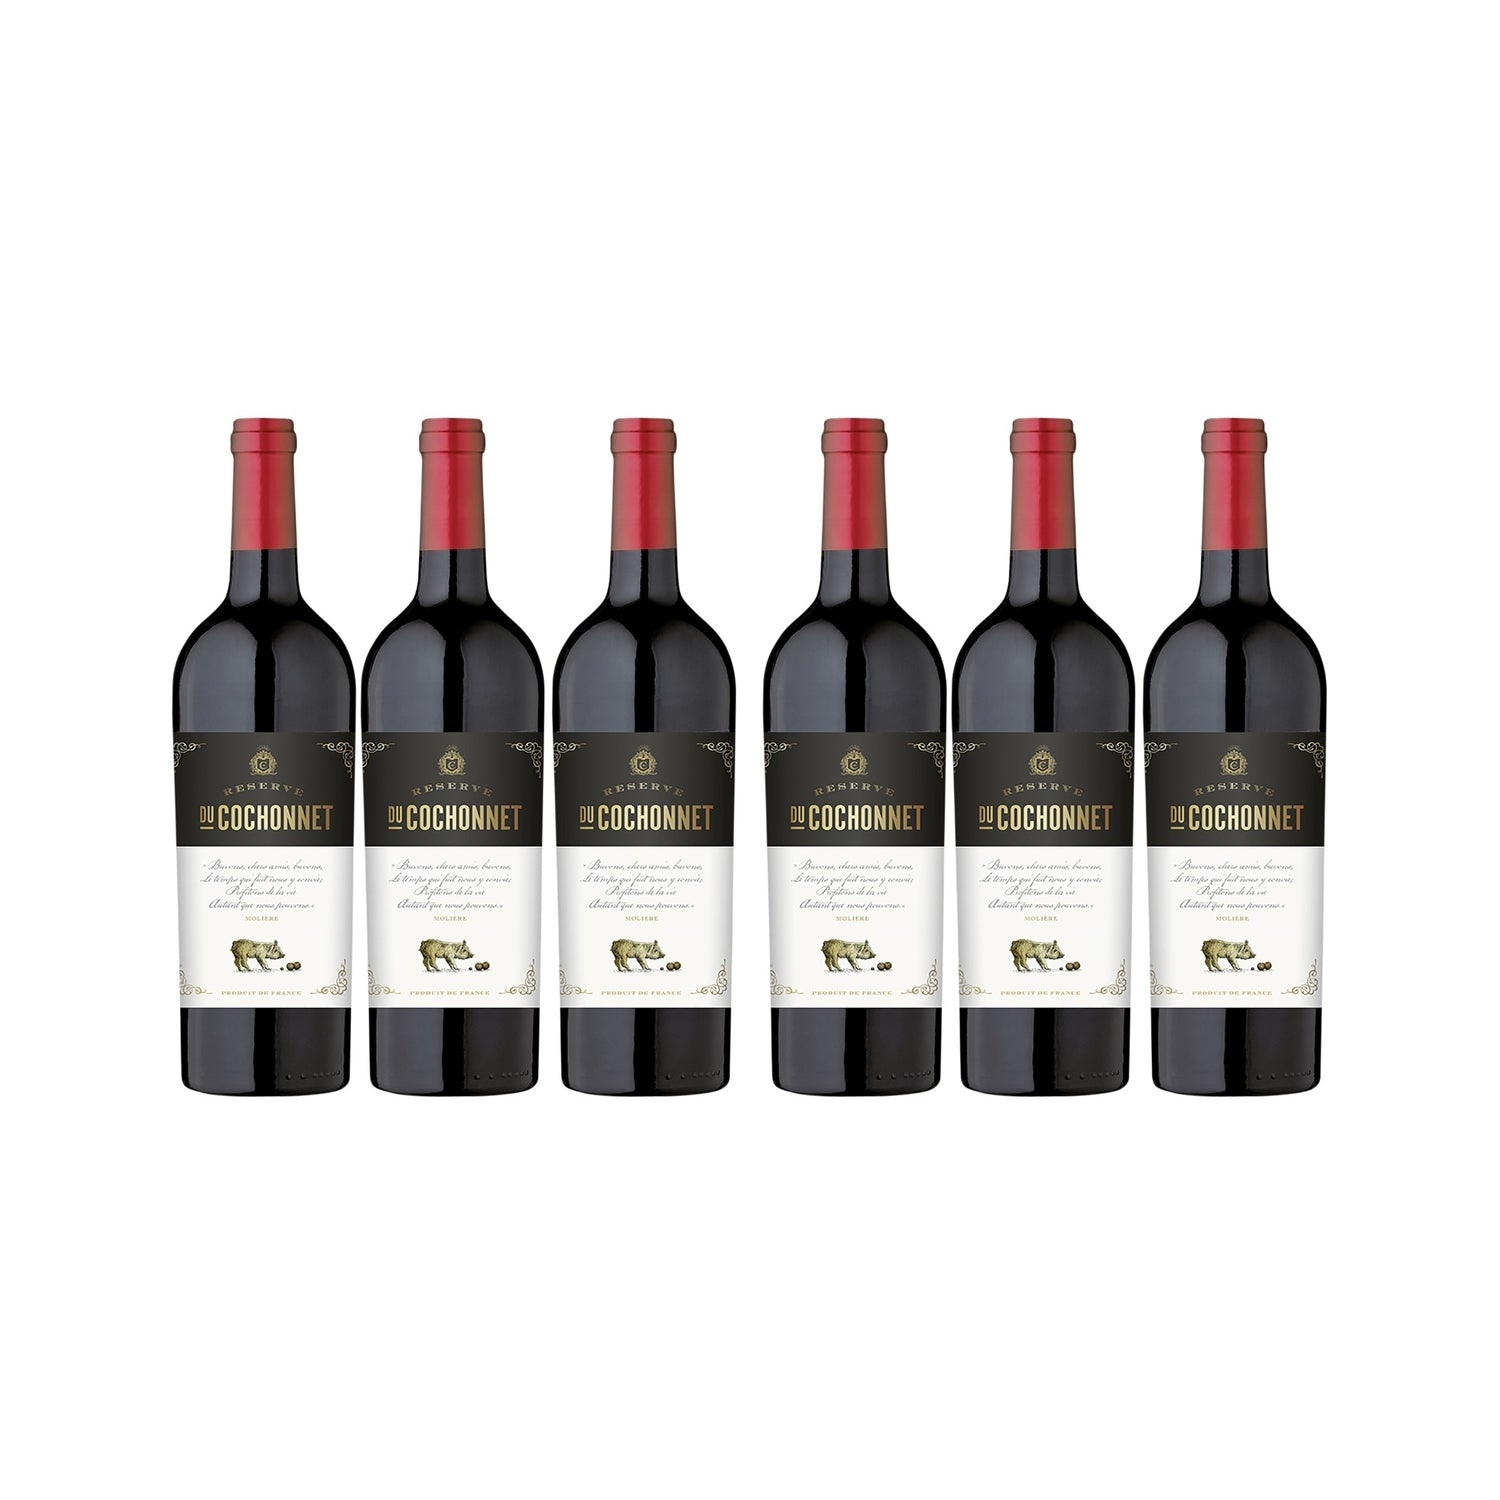 Réserve du Cochonnet Rouge Pays d' Oc Rotwein Wein trocken IGP Frankreich (6 x 0.75l) - Versanel -